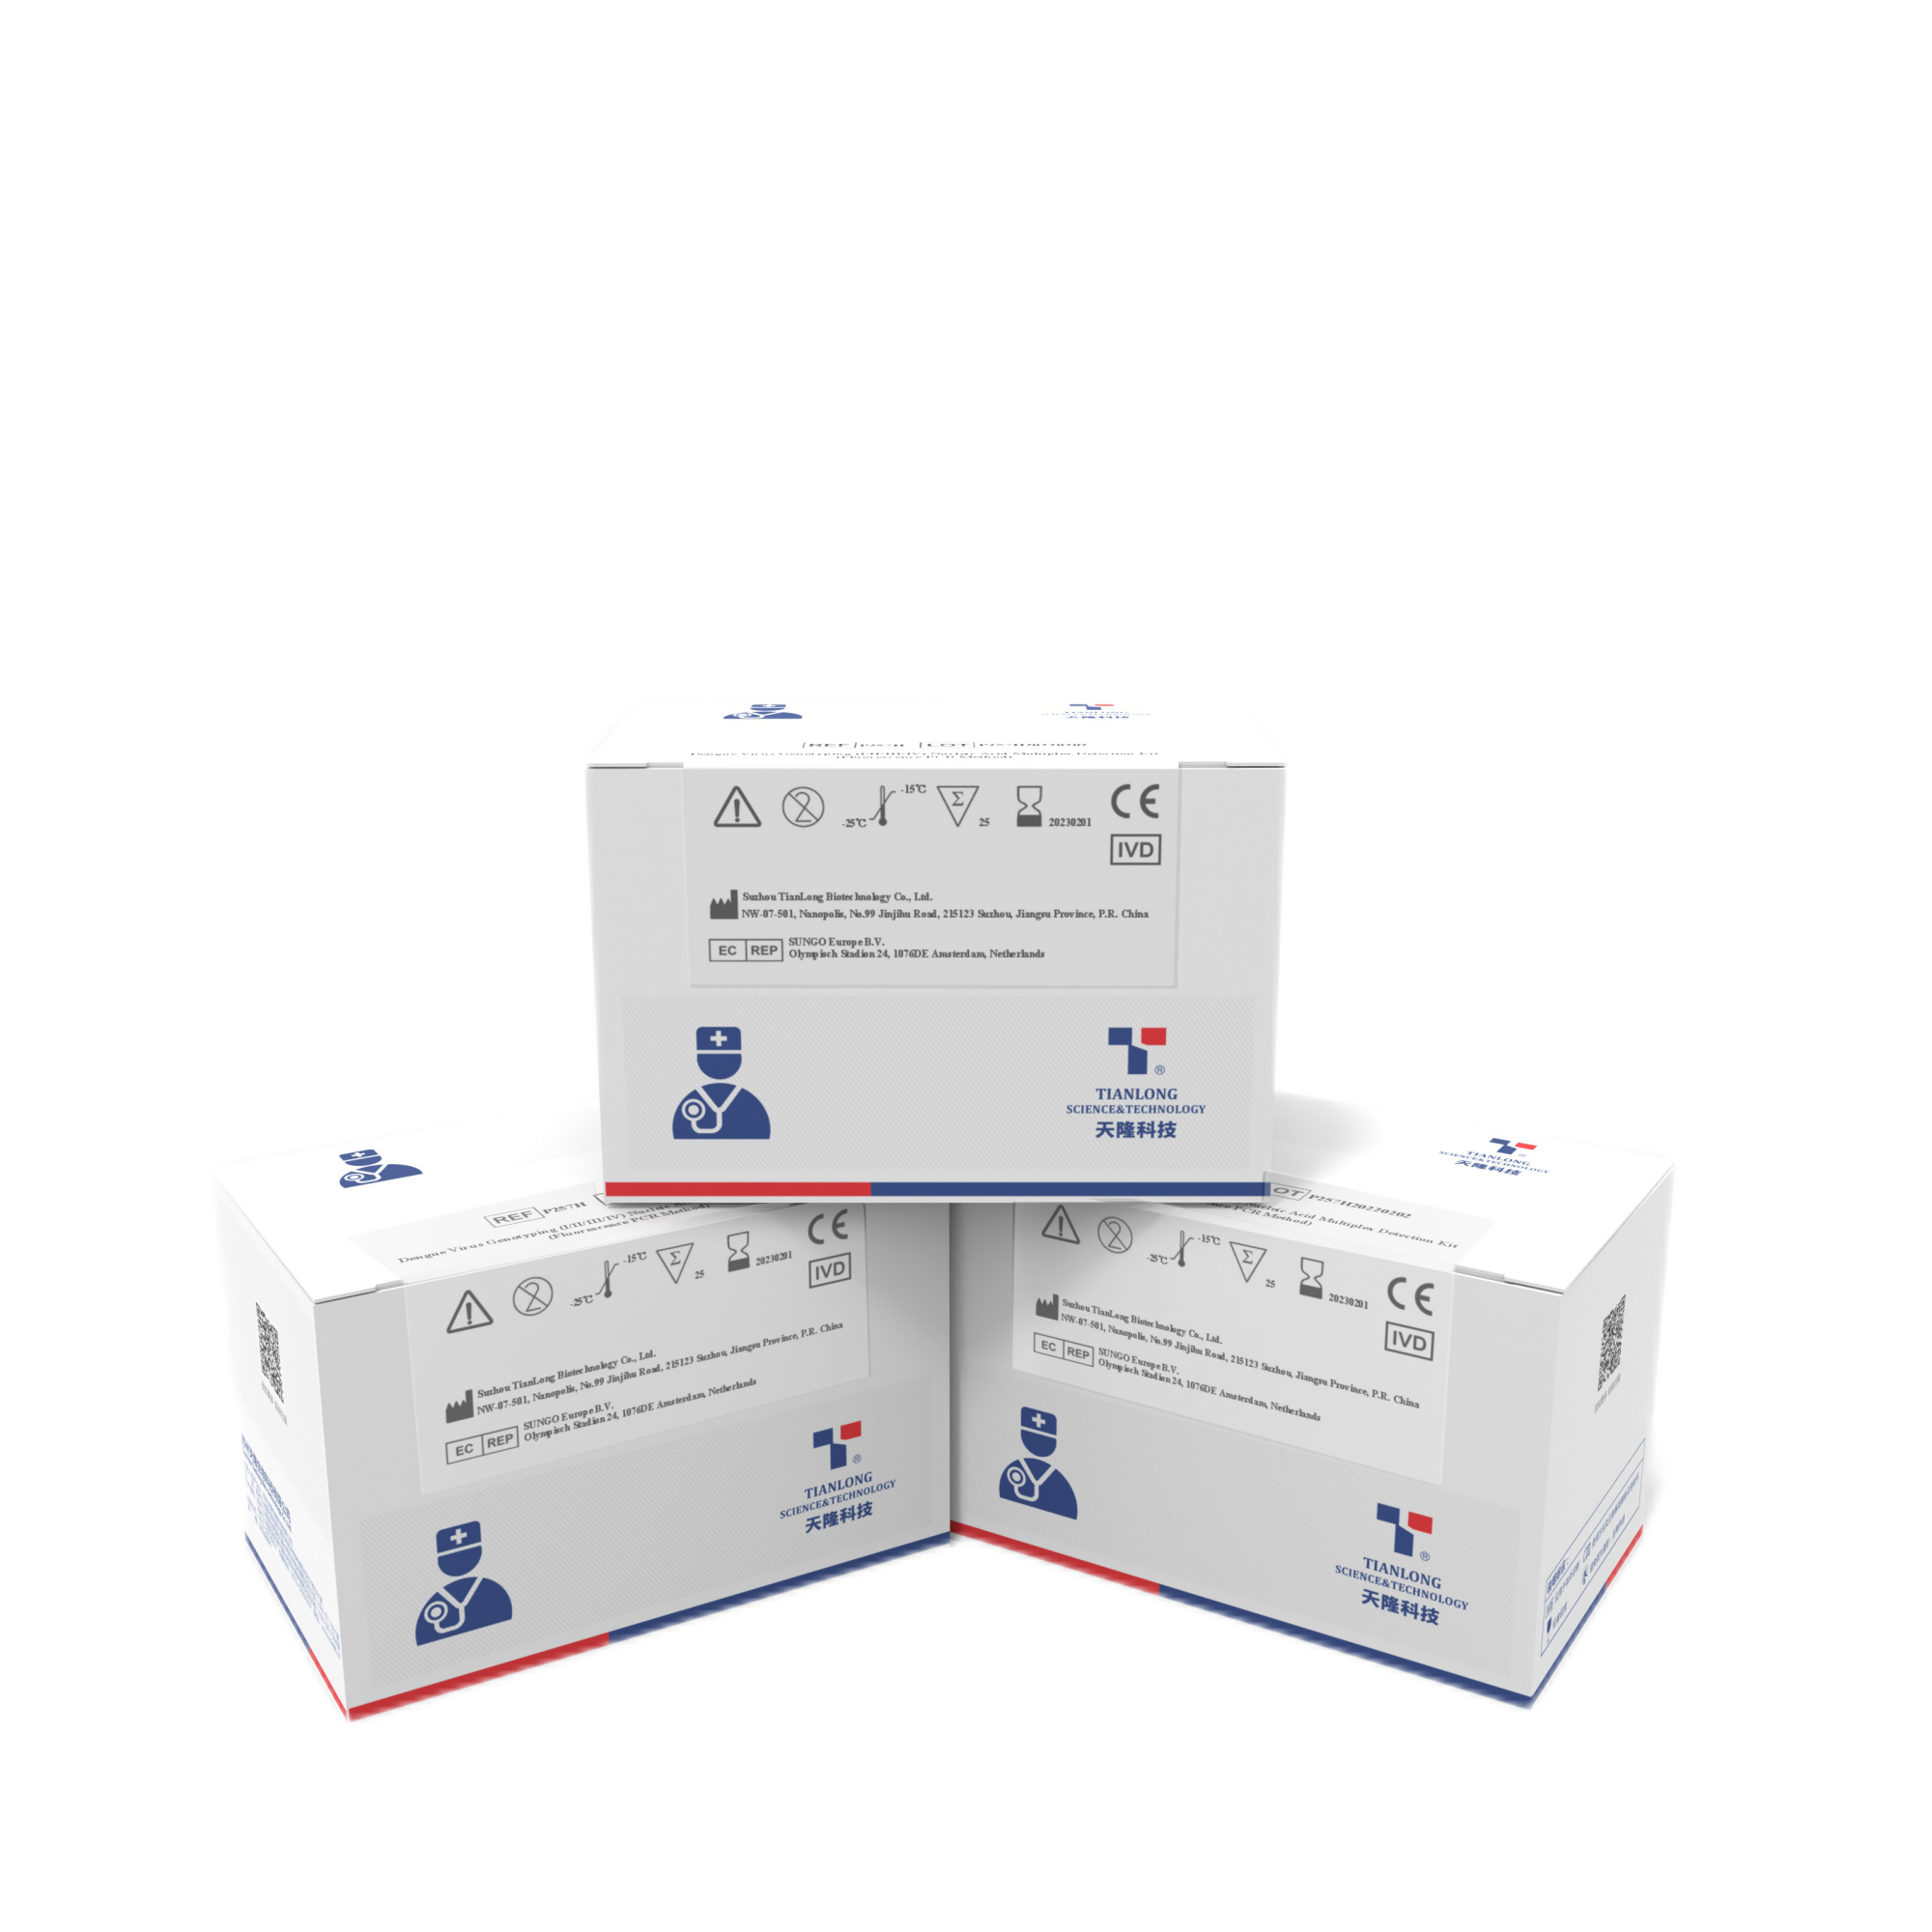 Acheter P257H- Kit de détection multiplex d'acides nucléiques par génotypage du virus de la dengue,P257H- Kit de détection multiplex d'acides nucléiques par génotypage du virus de la dengue Prix,P257H- Kit de détection multiplex d'acides nucléiques par génotypage du virus de la dengue Marques,P257H- Kit de détection multiplex d'acides nucléiques par génotypage du virus de la dengue Fabricant,P257H- Kit de détection multiplex d'acides nucléiques par génotypage du virus de la dengue Quotes,P257H- Kit de détection multiplex d'acides nucléiques par génotypage du virus de la dengue Société,